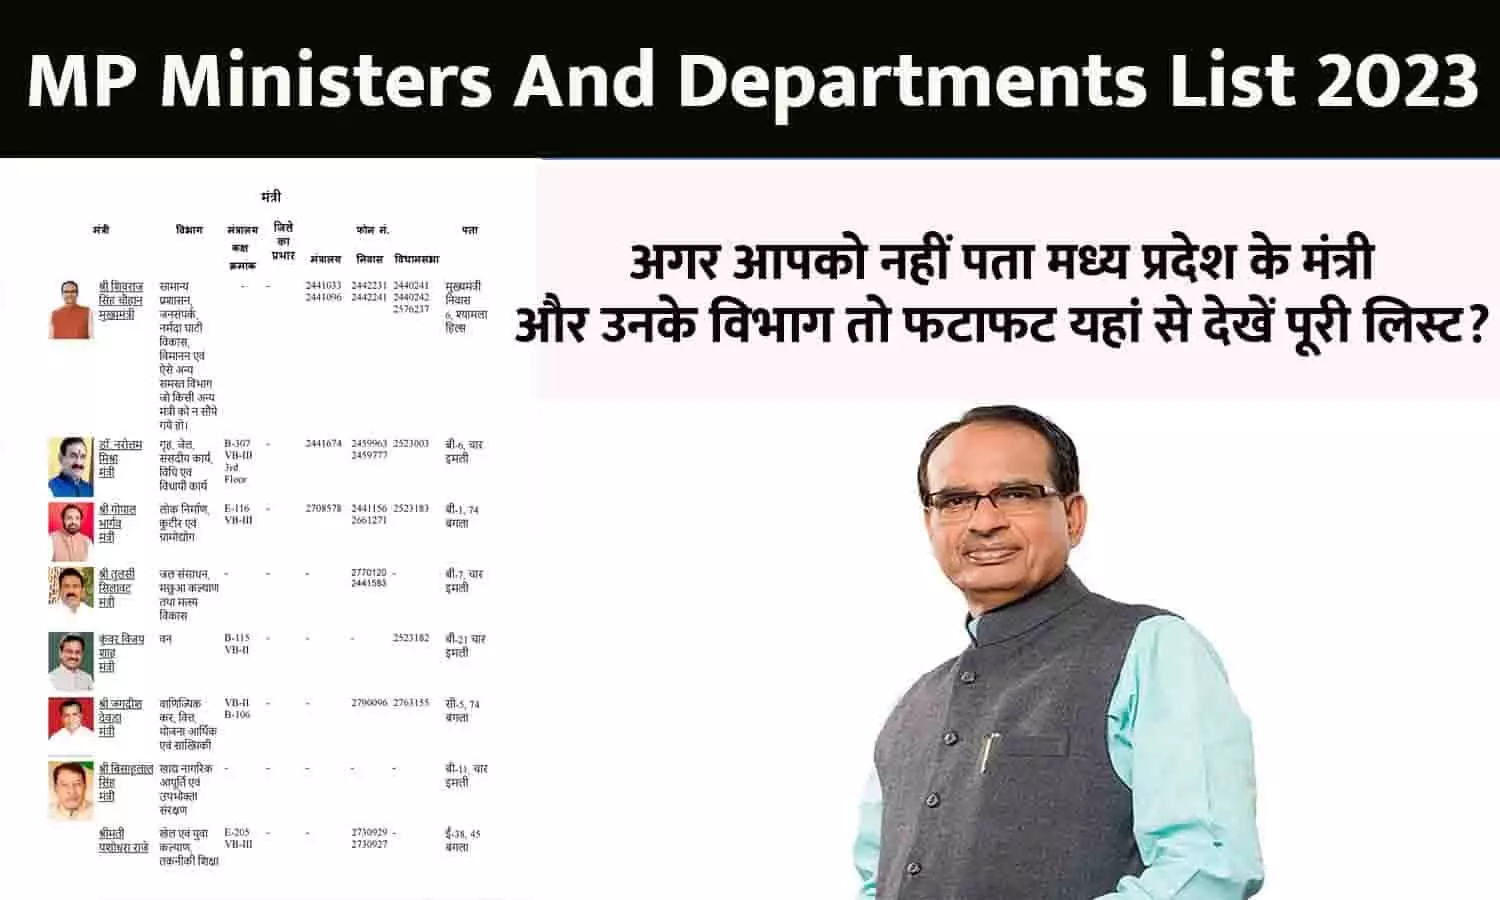 MP Ministers And Departments List In Hindi 2023: अगर आपको नहीं पता मध्य प्रदेश के मंत्री और उनके विभाग तो फटाफट यहां से देखें पूरी लिस्ट?